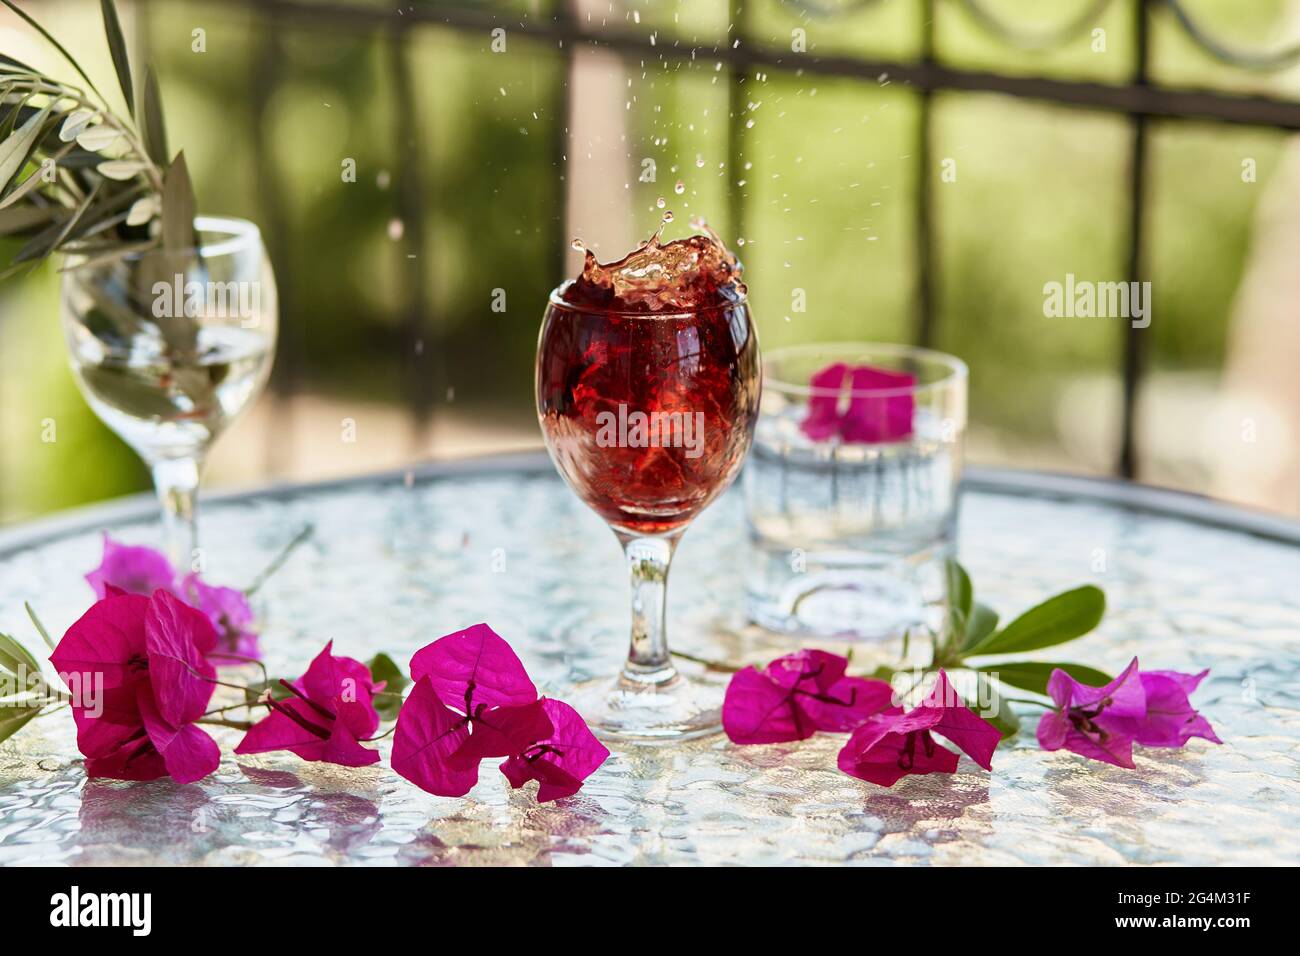 Elegante und farbenfrohe Explosion von Rotwein im Glas. Im Sommer helle Cocktails auf dem Hintergrund. Dekorative rosa Blumen und der Zweig des olivgrünen t Stockfoto